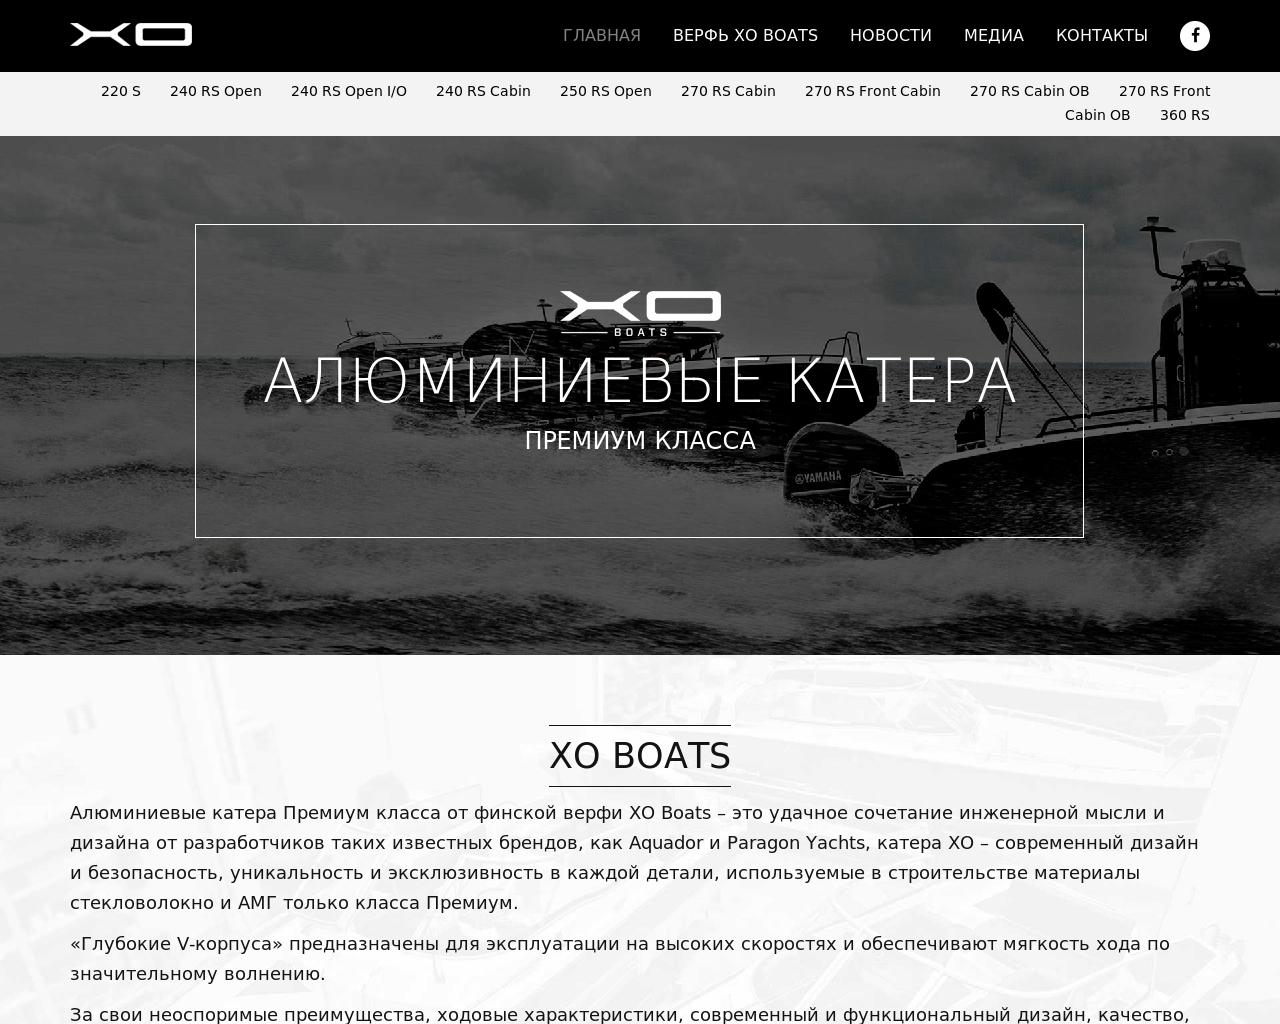 Изображение сайта stuga.ru в разрешении 1280x1024